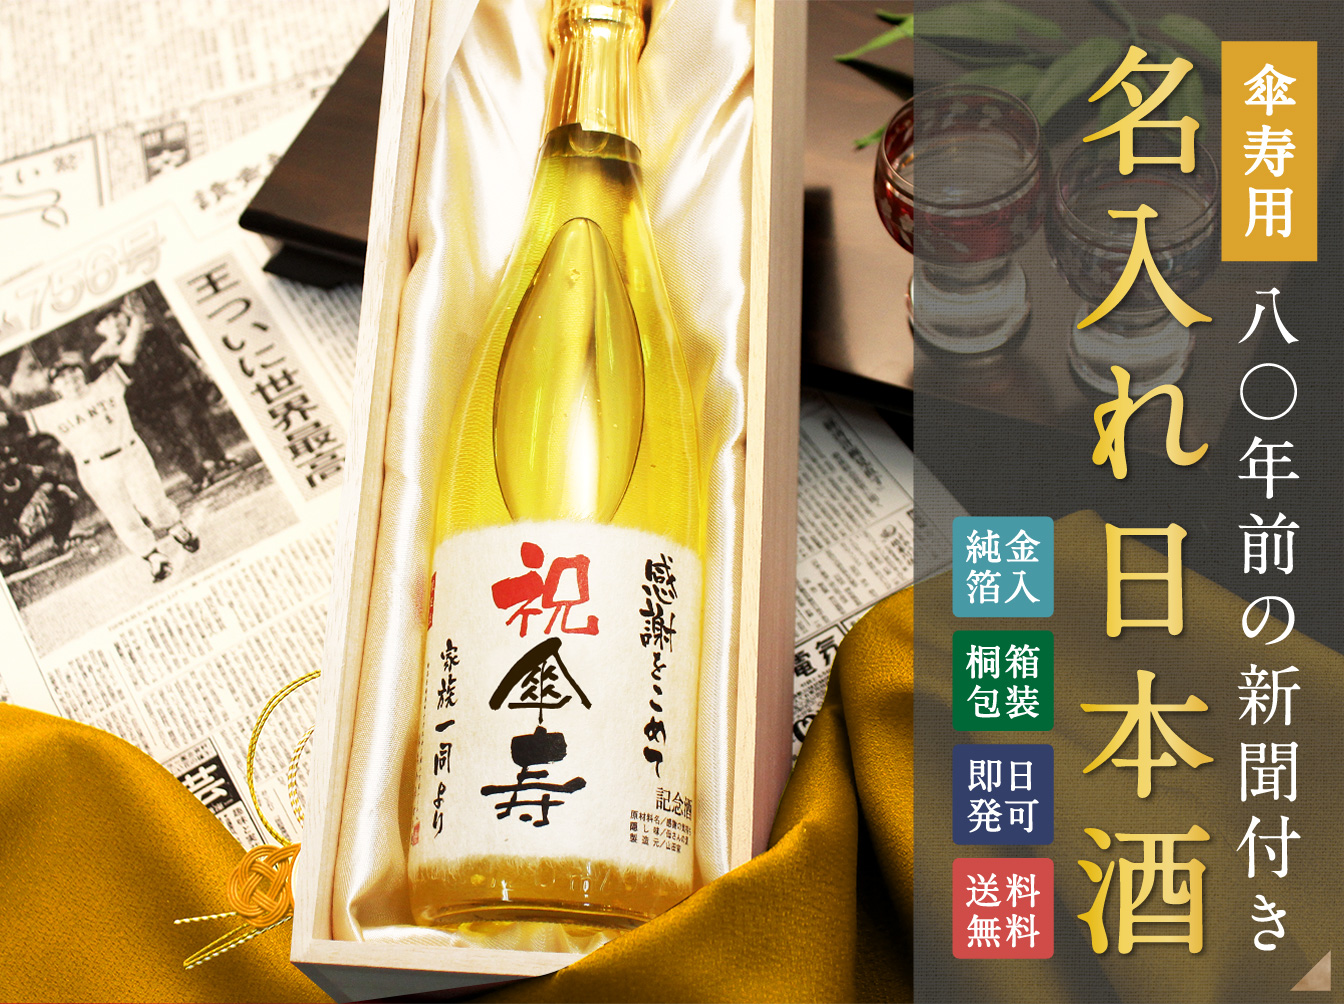 傘寿用80年前の新聞付き「名入れ日本酒」